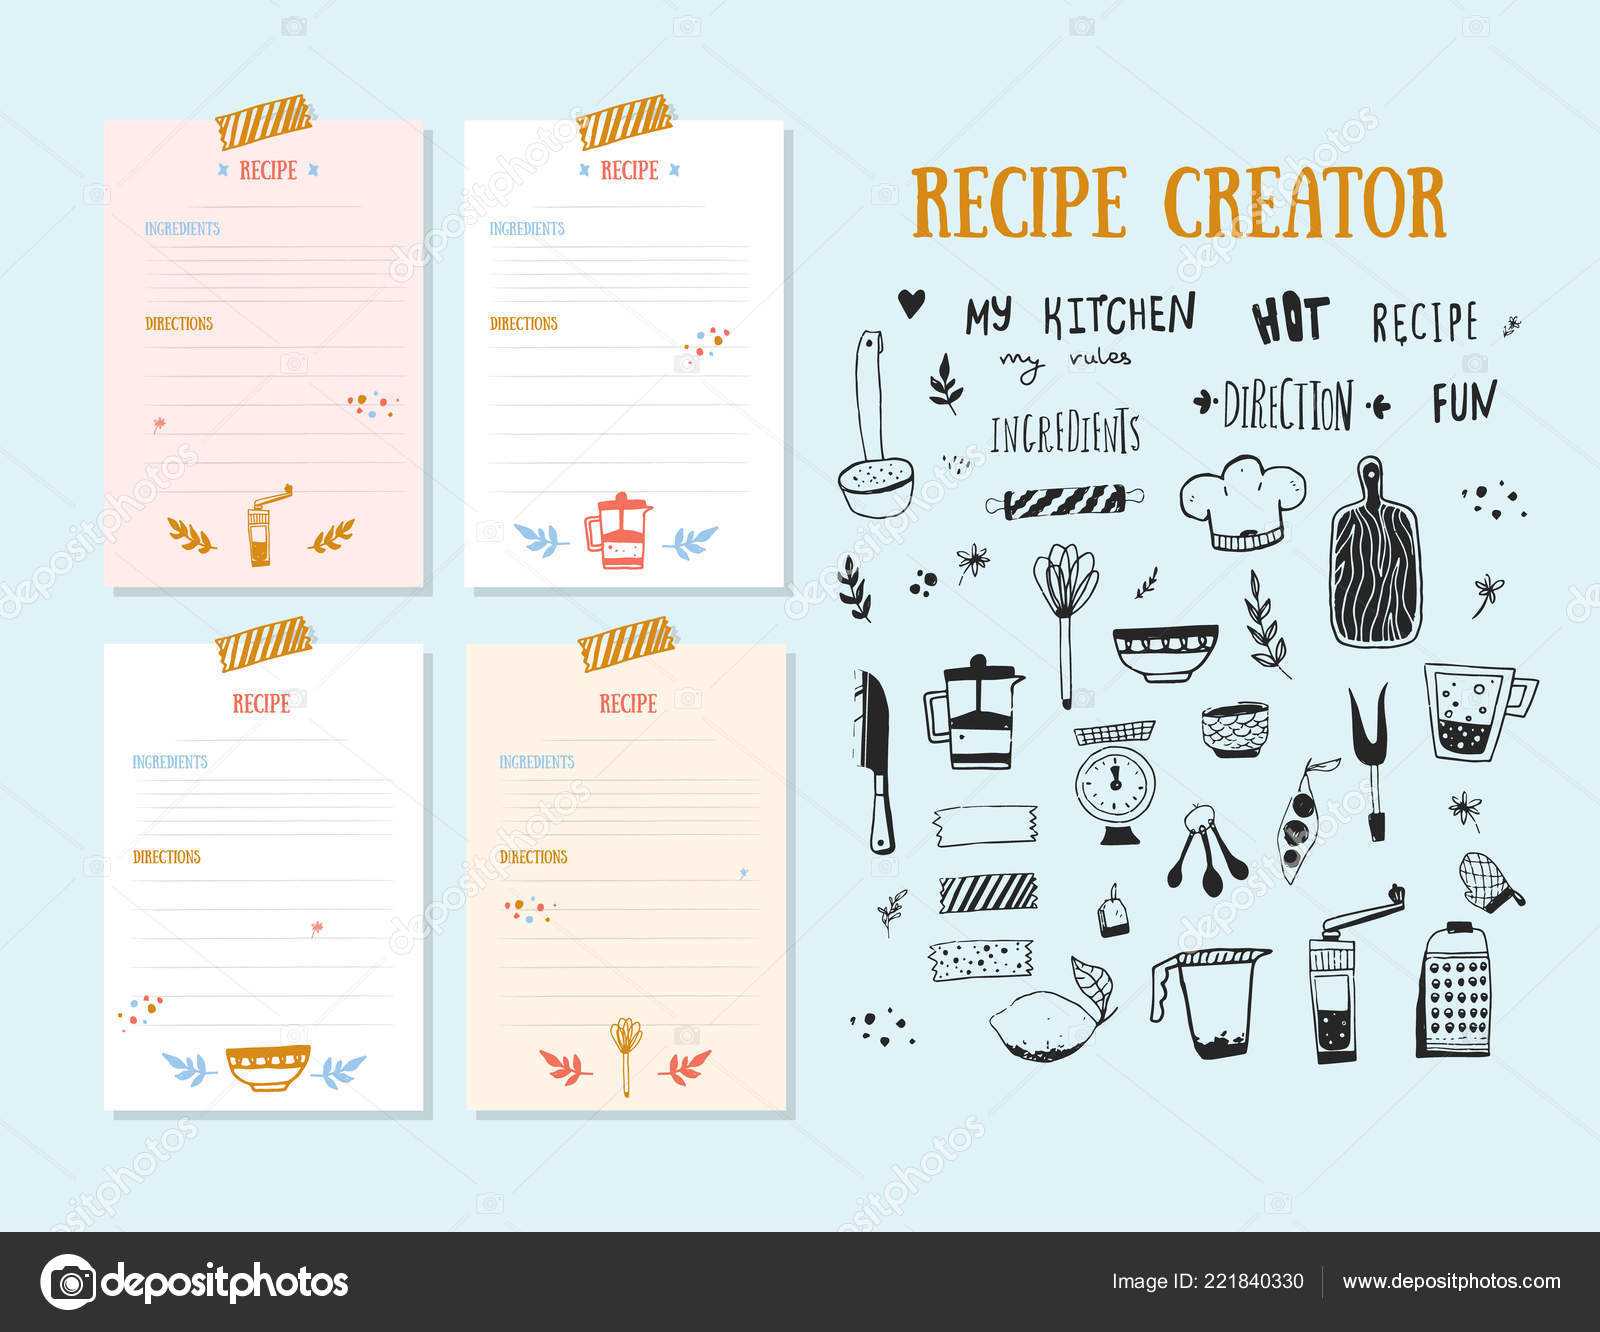 Cookbook Design Template | Modern Recipe Card Template Set Throughout Recipe Card Design Template